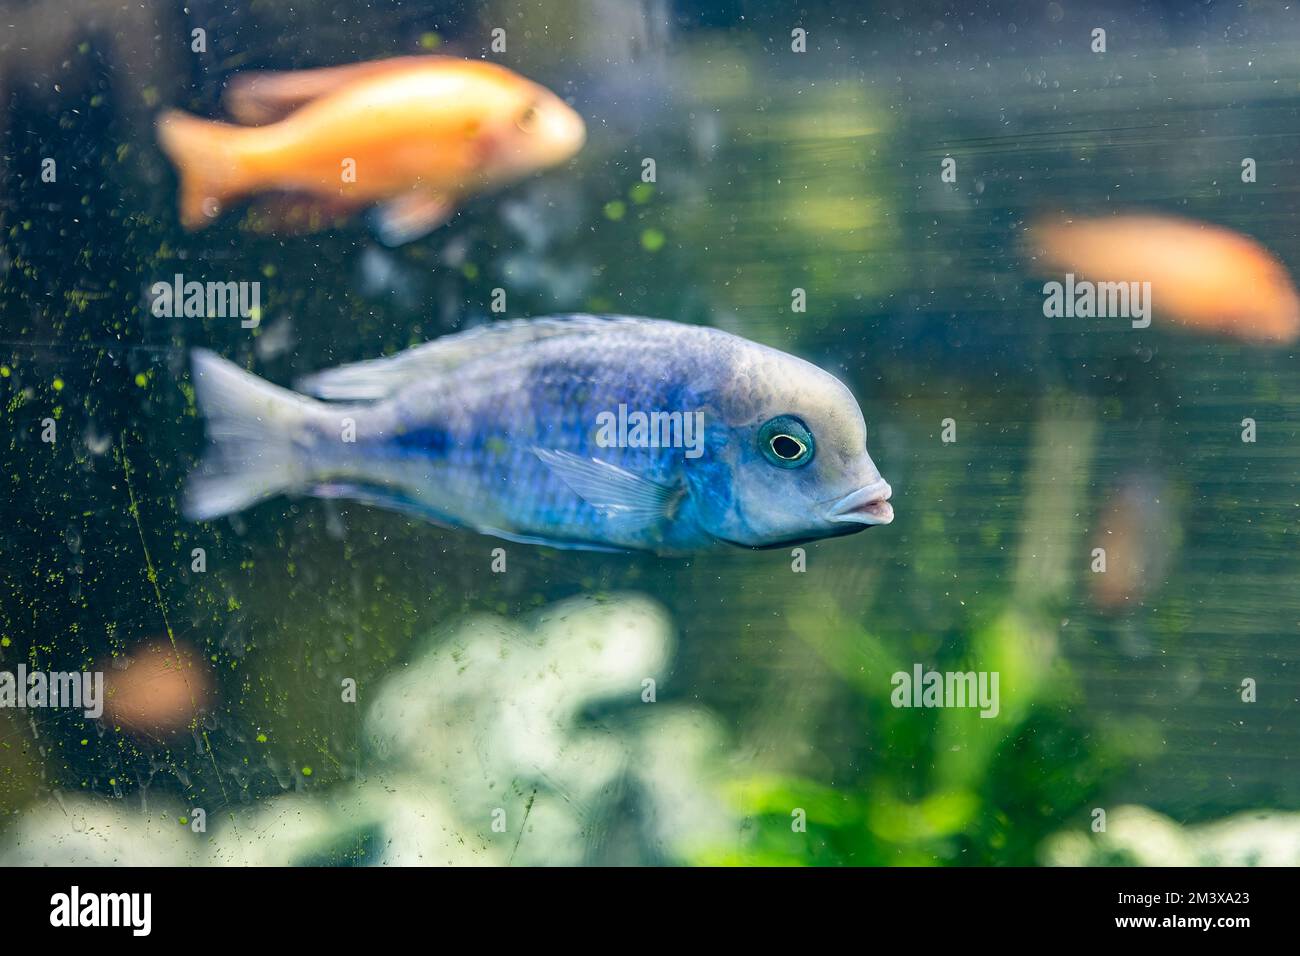 Cyrtocara moorii fish in the aquarium Stock Photo